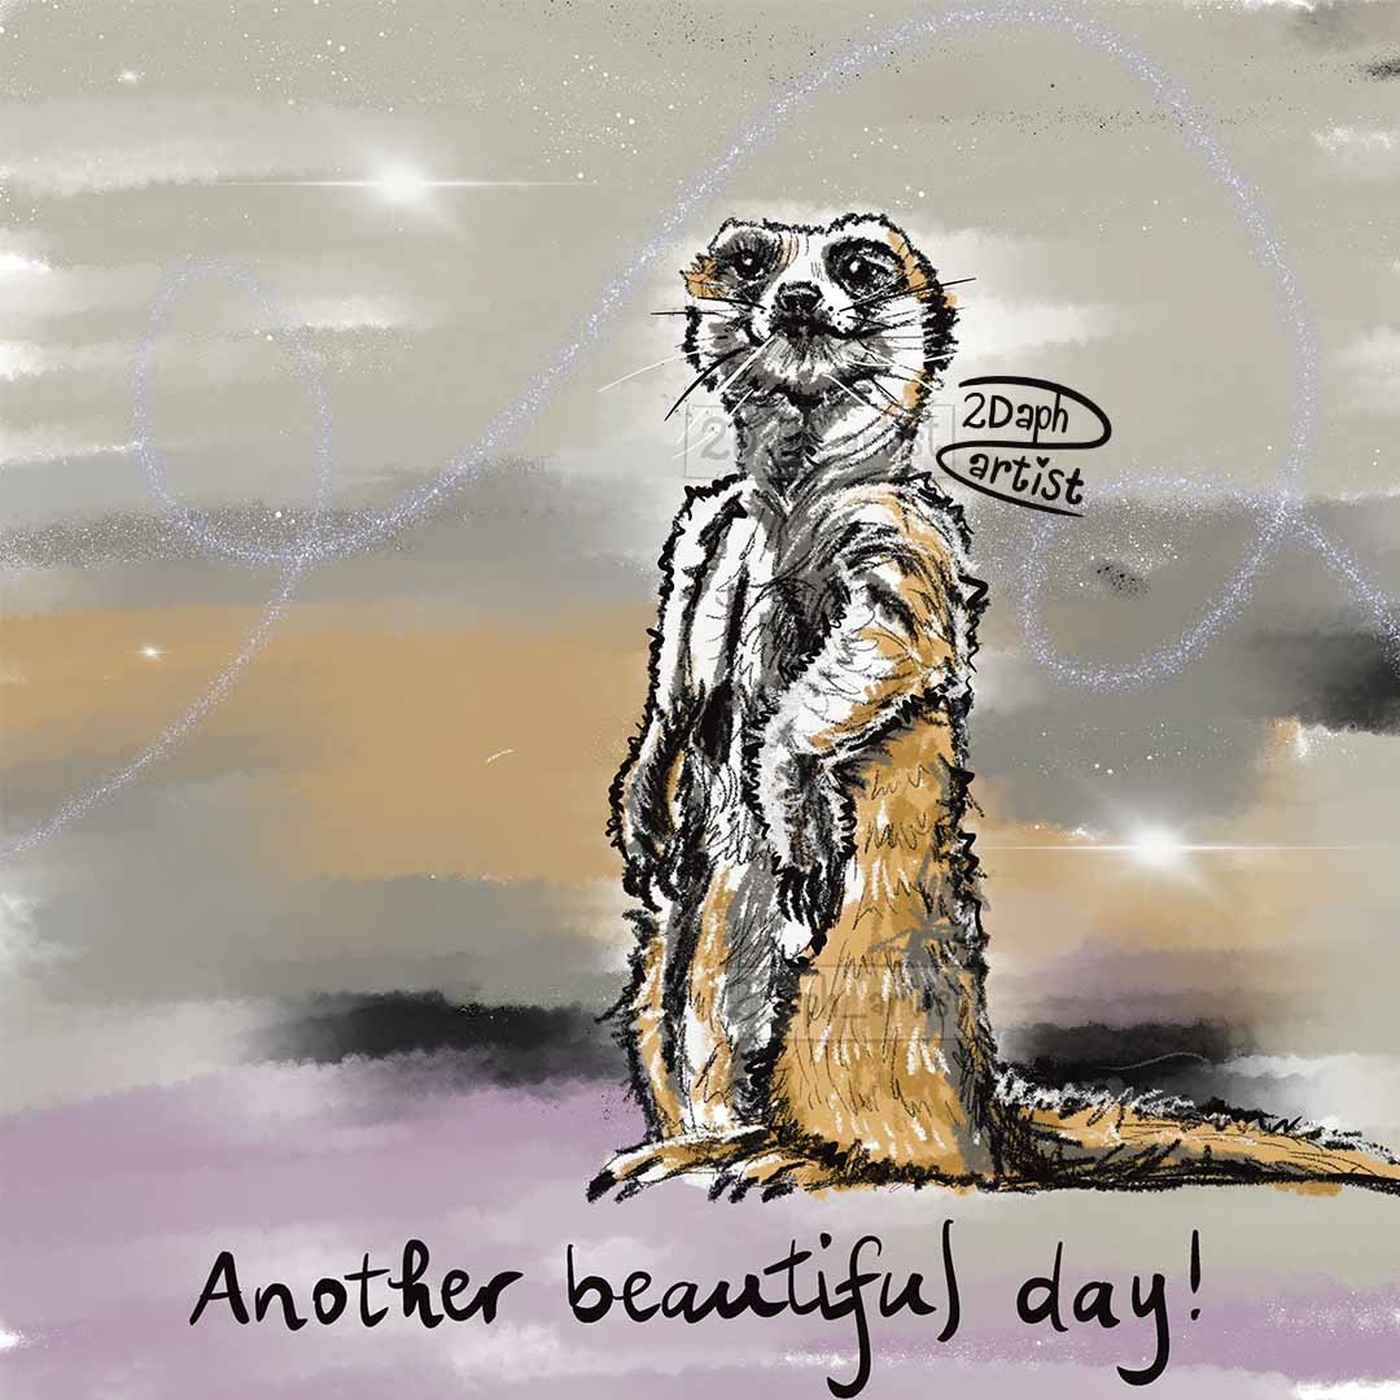 2Daph_artist - Max le suricate